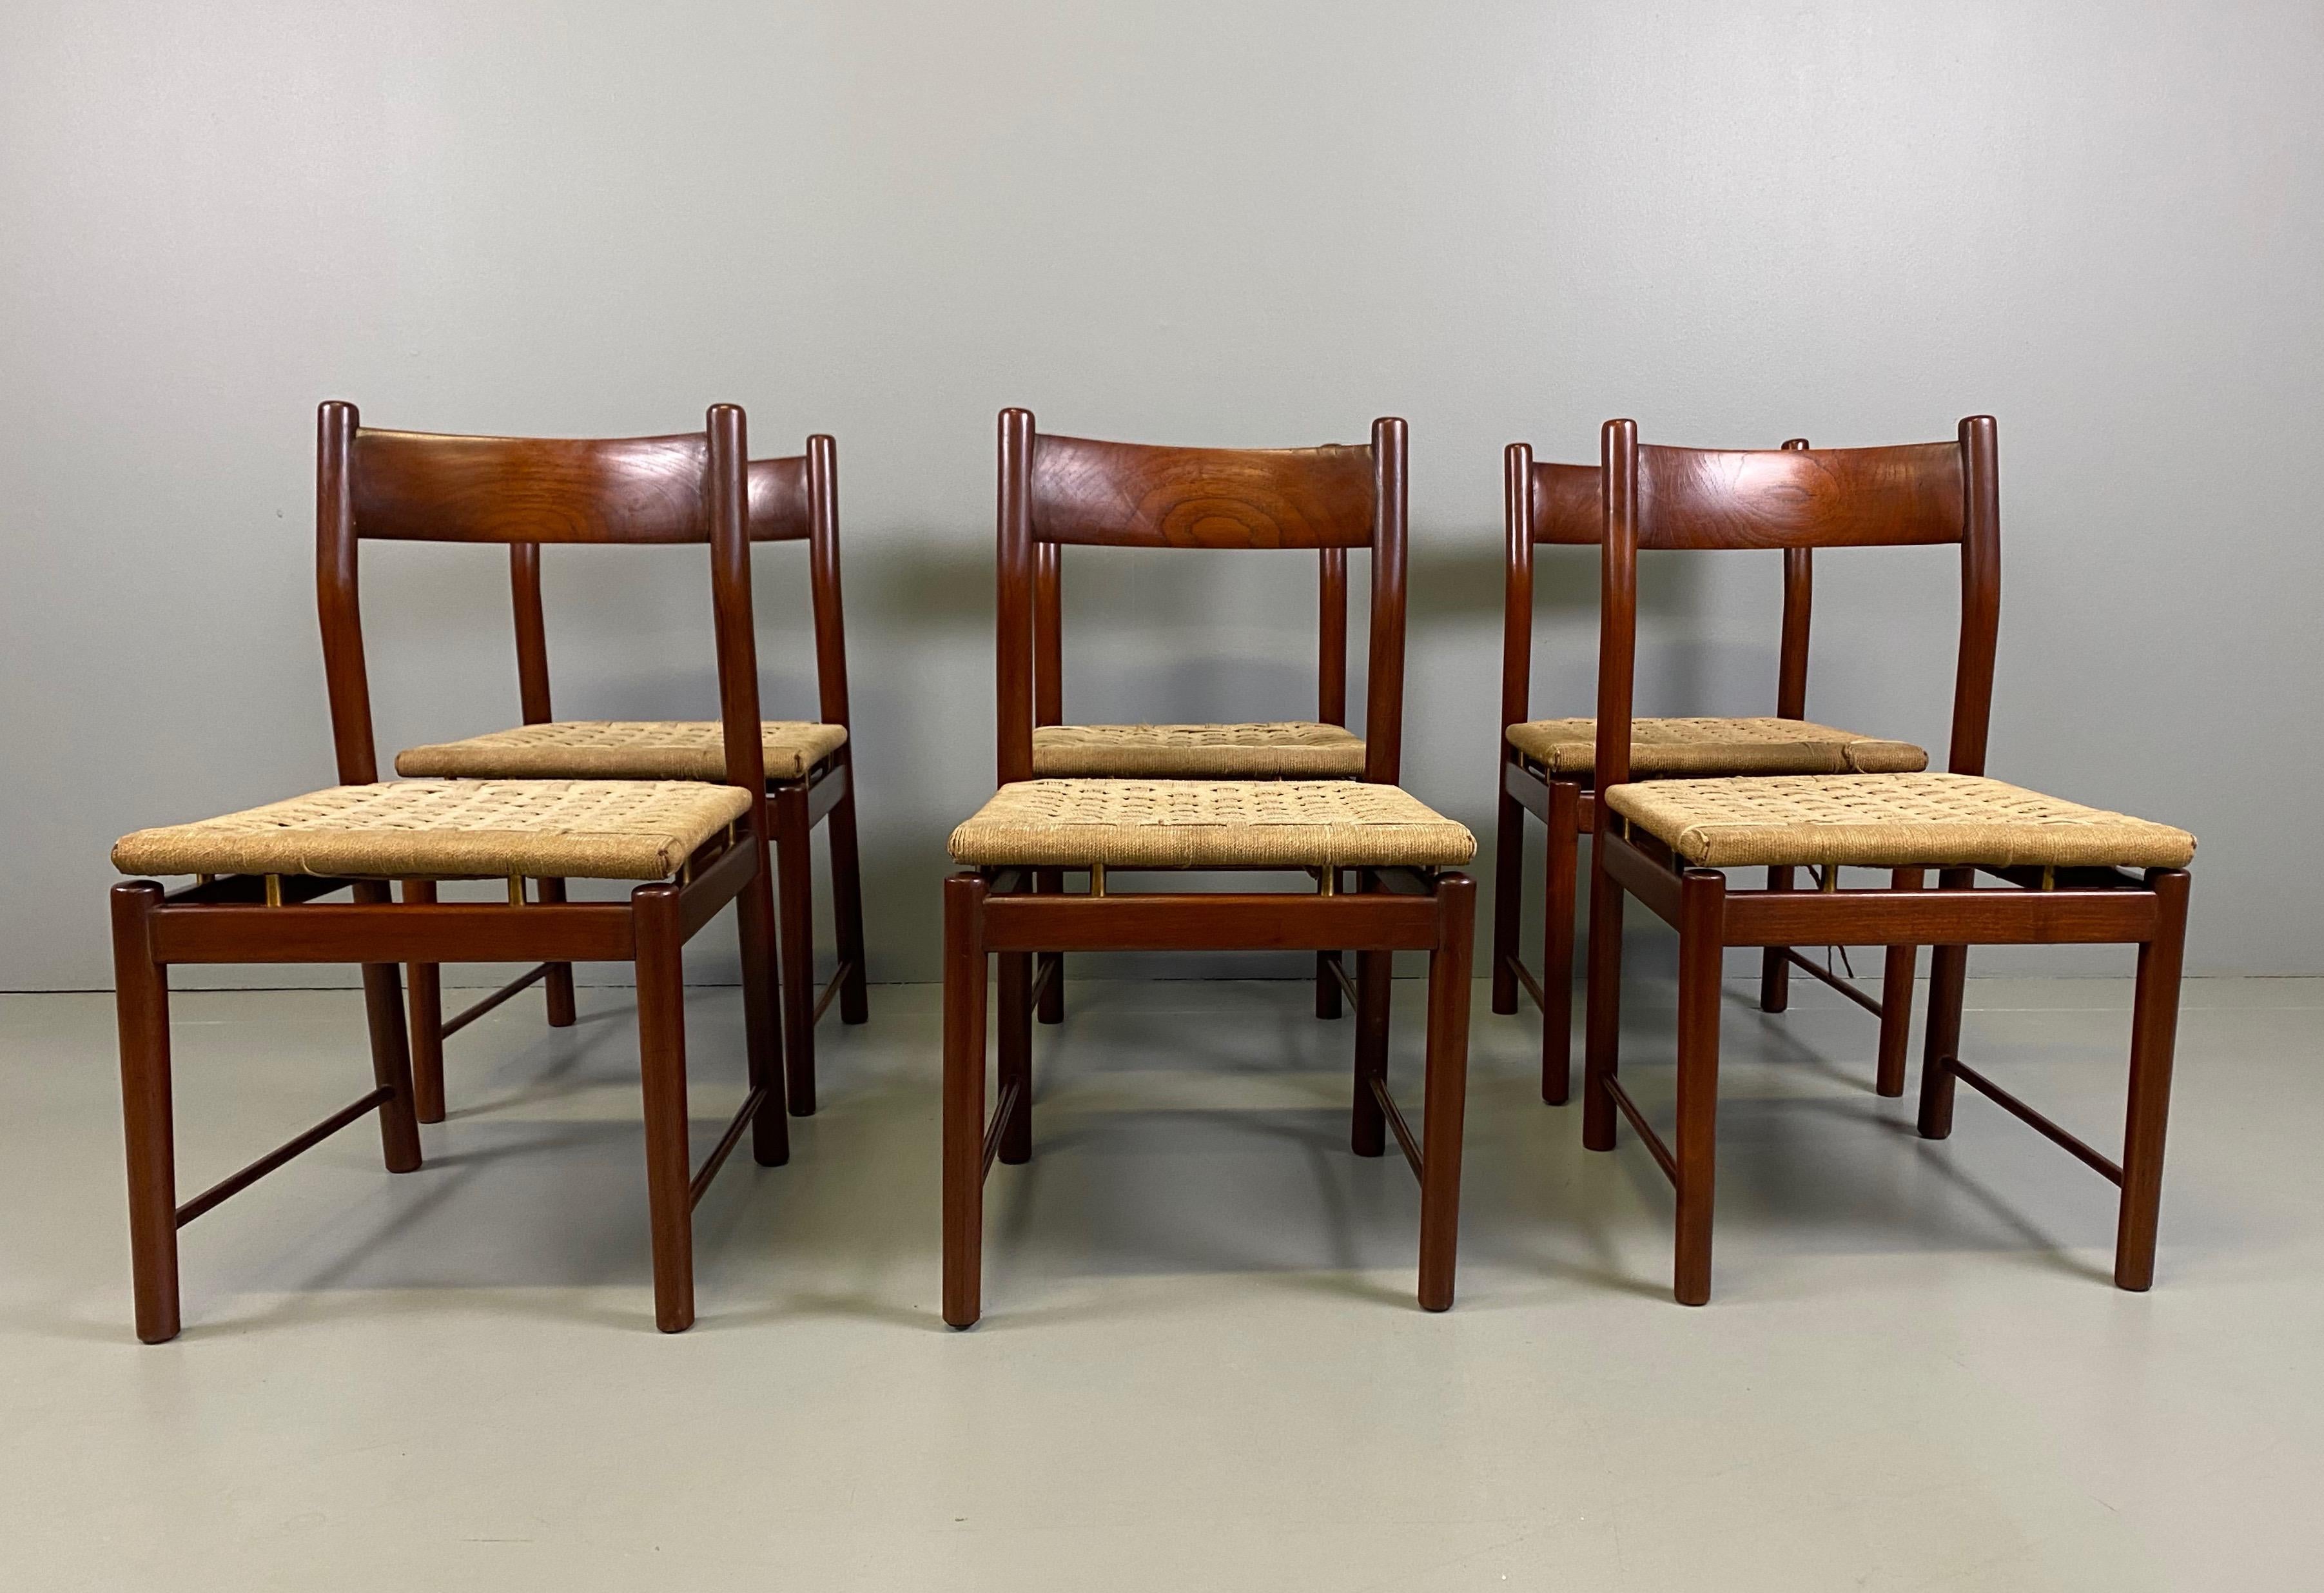 Ilmari Tapiovaara sechs Stühle aus massivem Teakholz für La Permanente Cantù, 1960er Jahre. das Set besteht aus 6 Stühlen